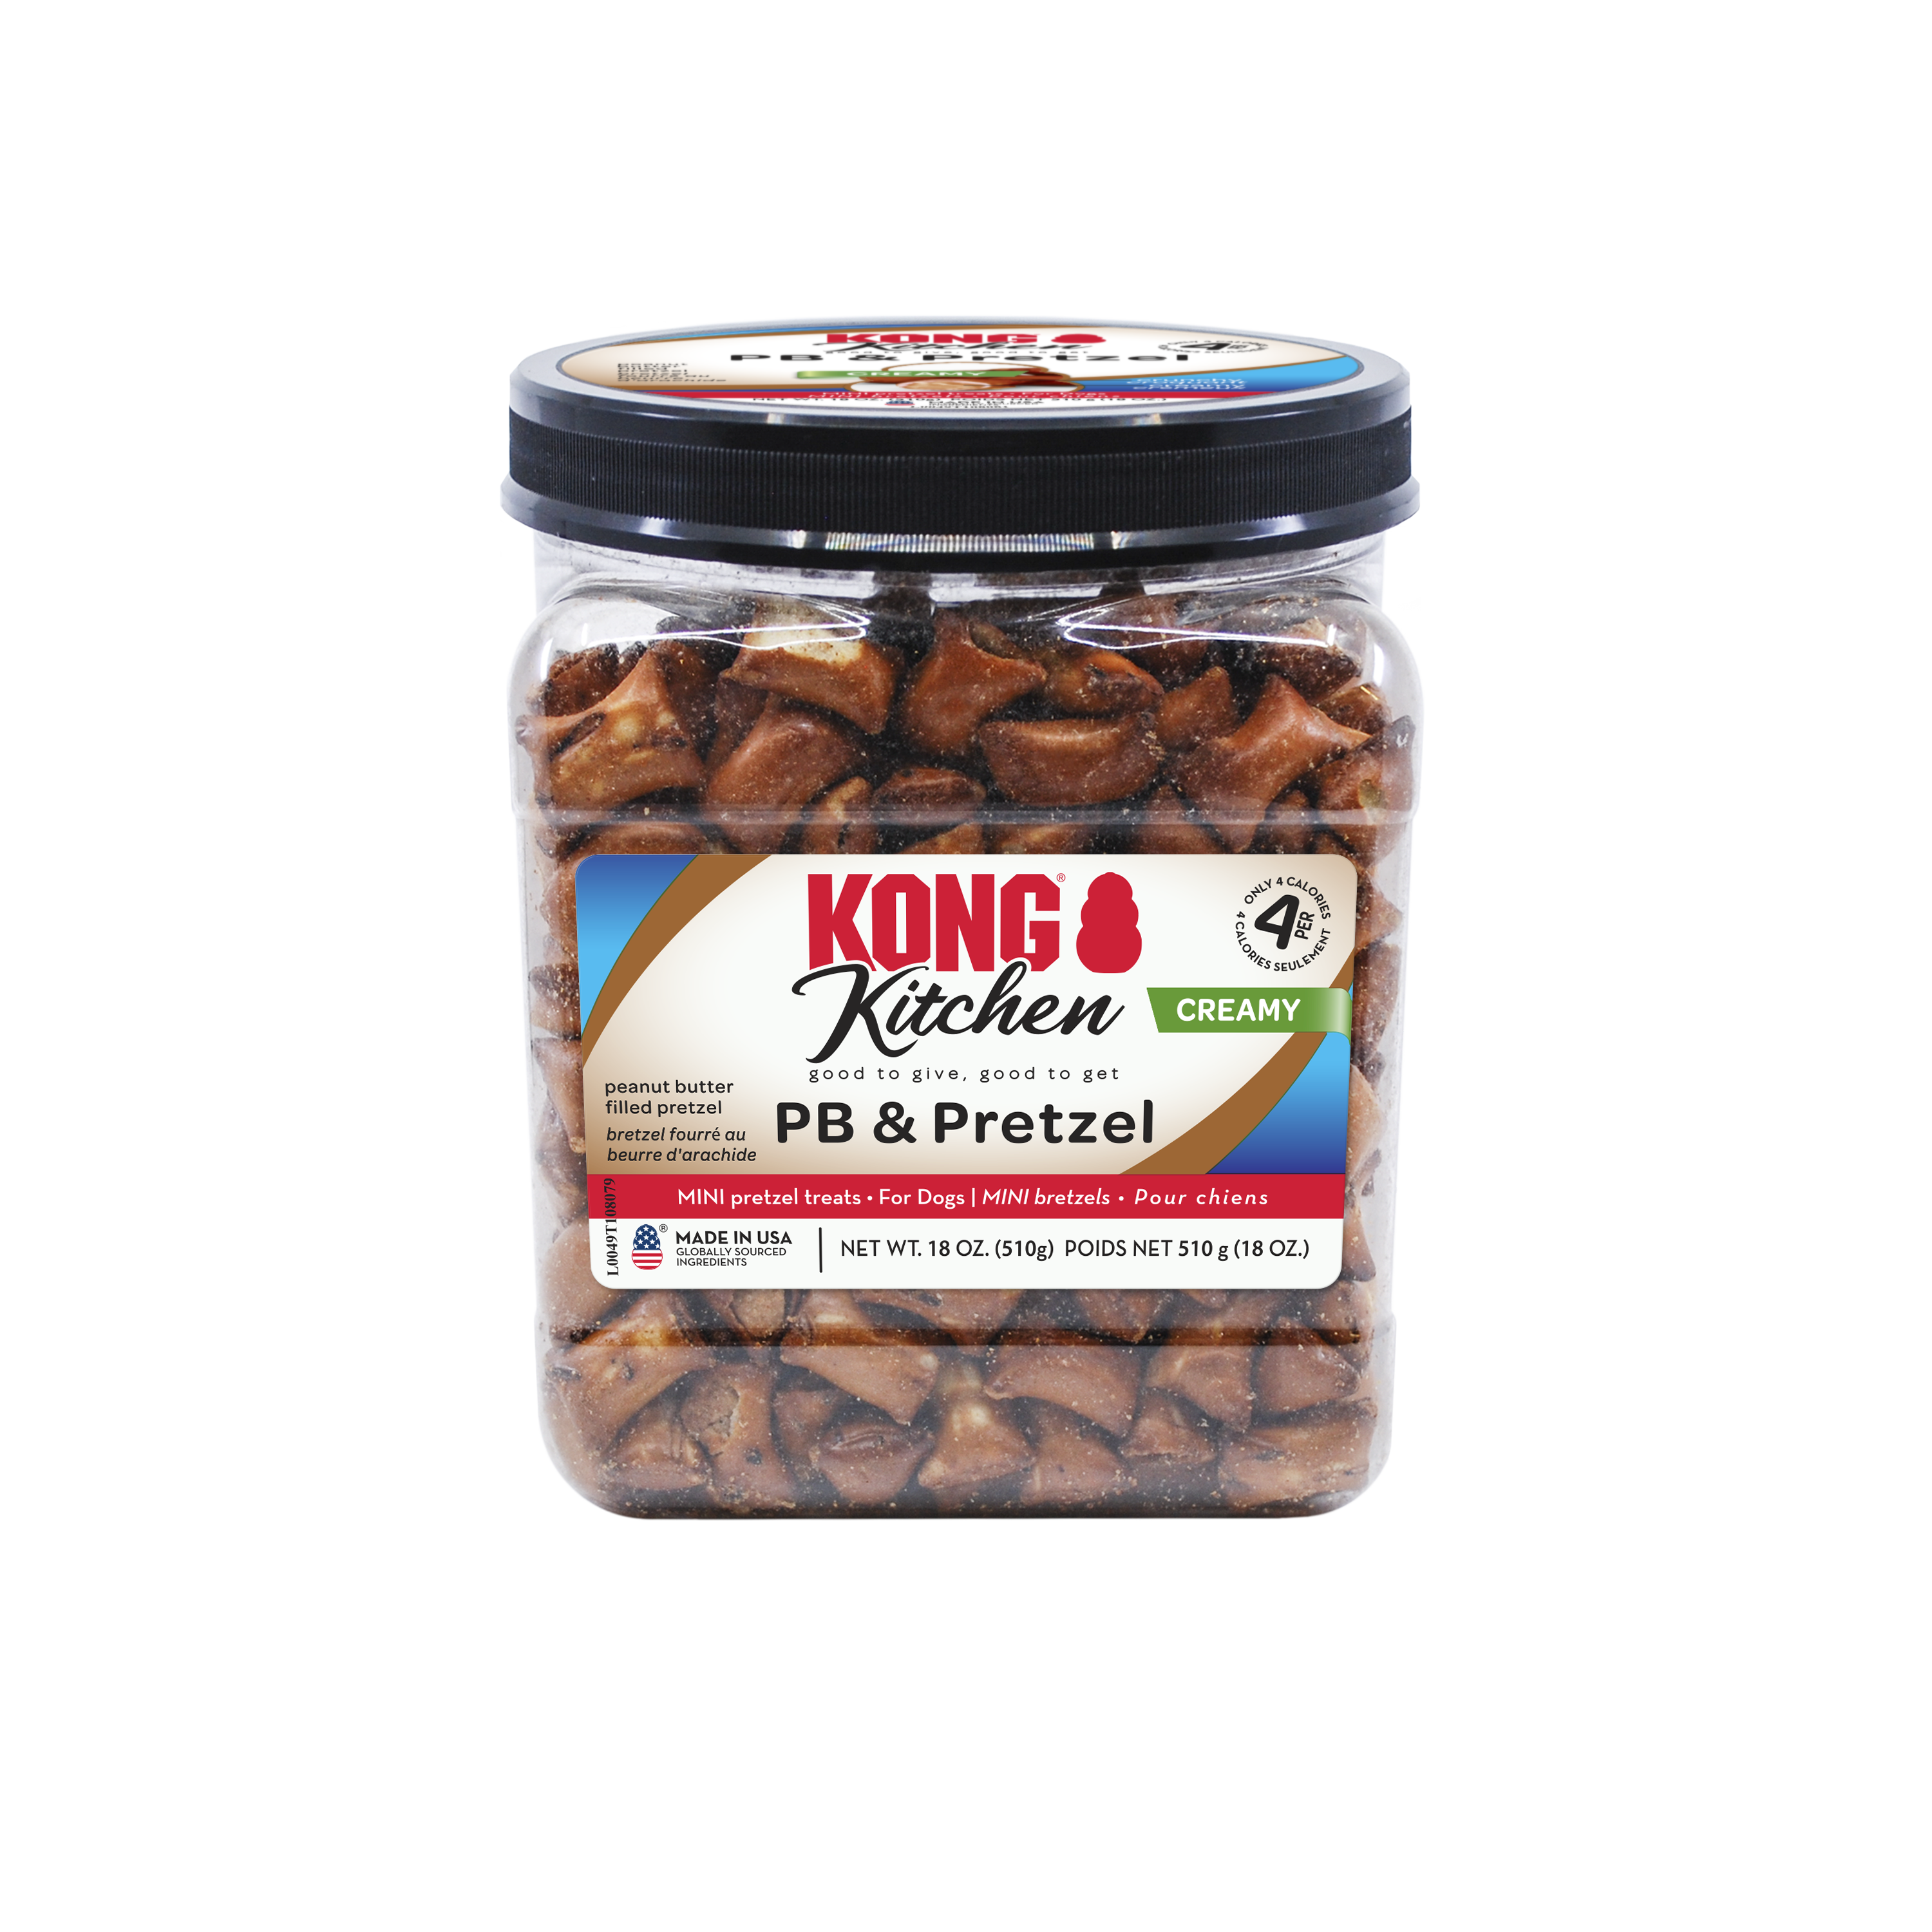 KONG Kitchen Creamy Peanut Butter & Pretzel onpack image du produit